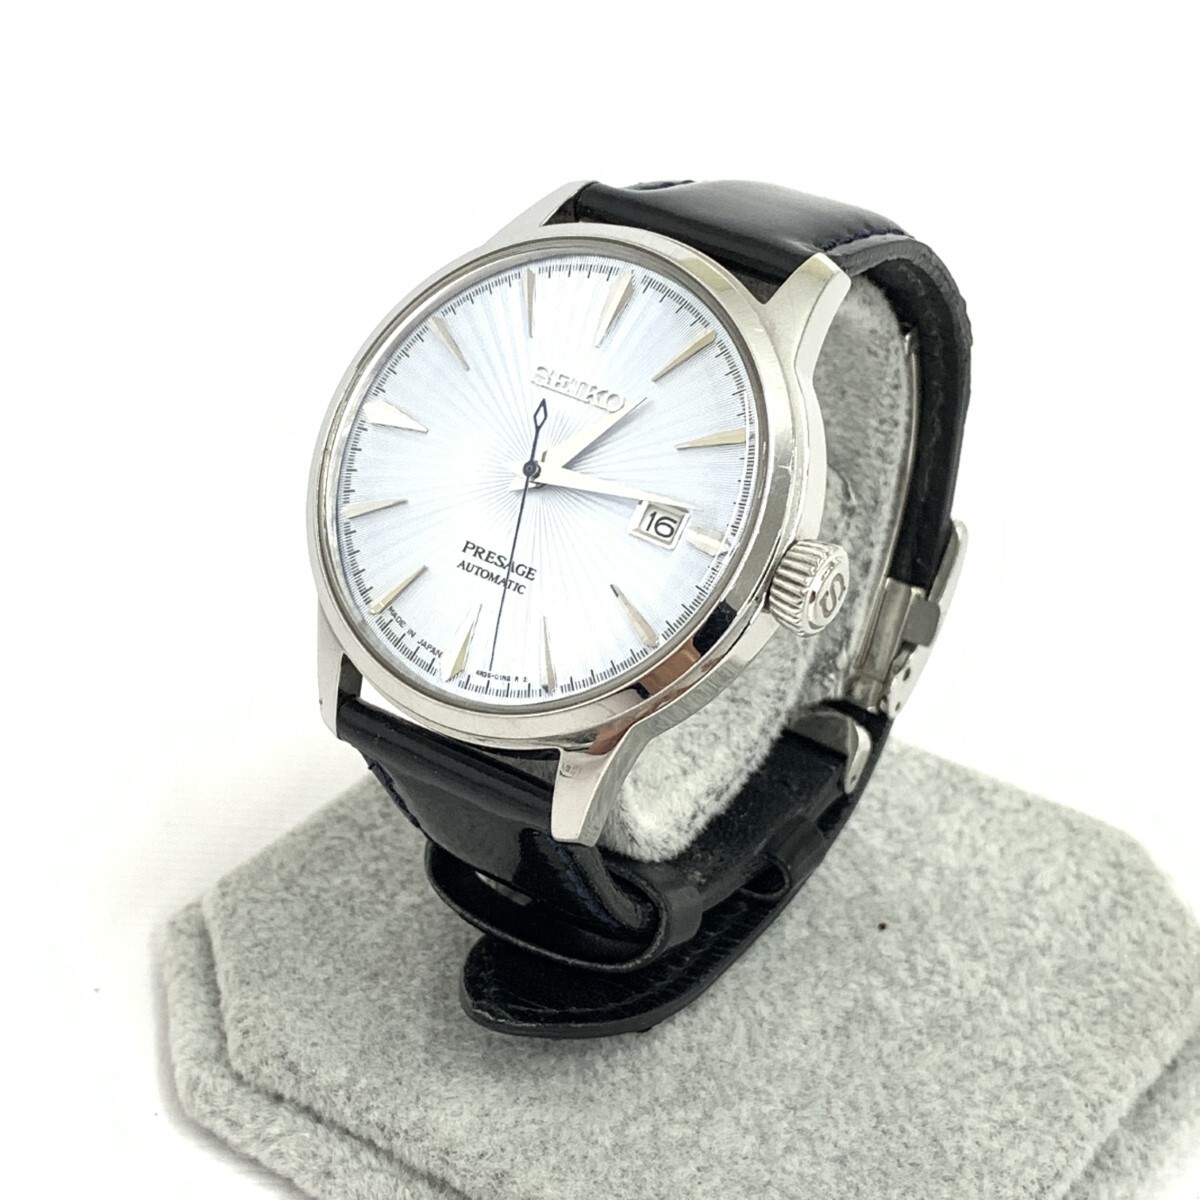 ◆SEIKO セイコー プレサージュ 腕時計 自動巻き◆4R35-01T0 ブラック/シルバーカラー SS×レザー メンズ ウォッチ watch_画像1